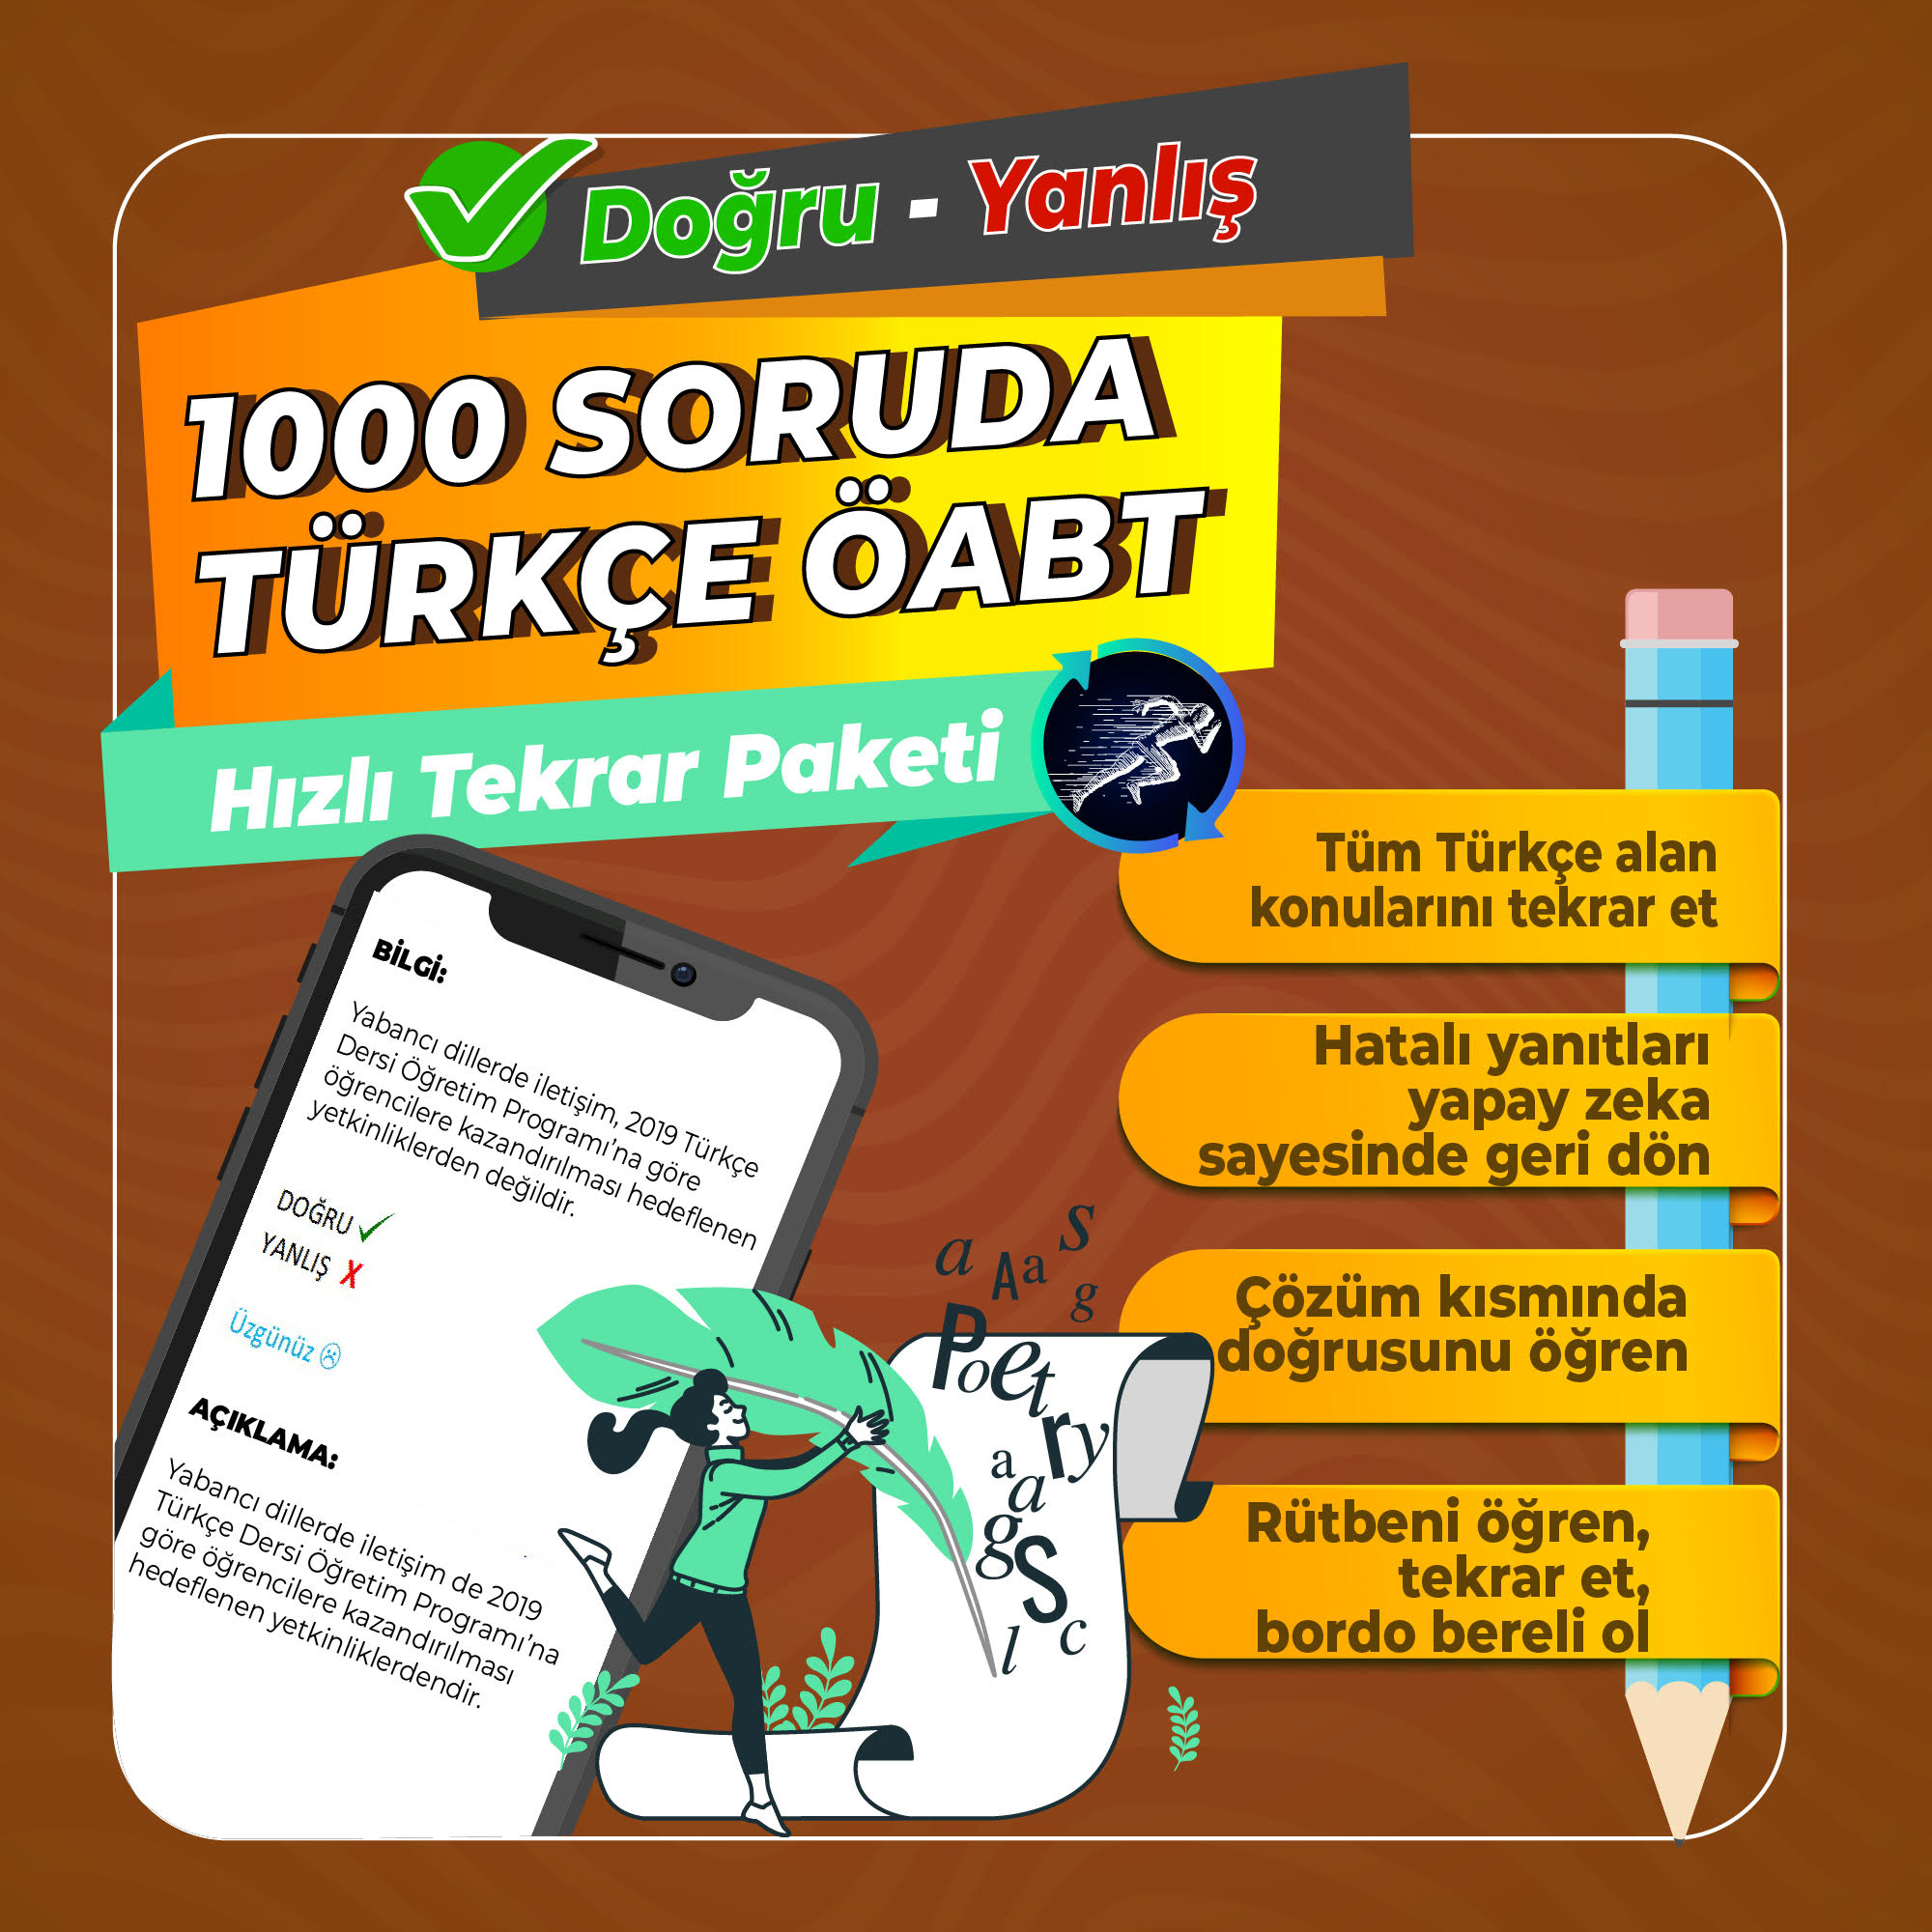 1000 SORUDA TÜRKÇE ÖABT Hızlı Tekrar Paketi